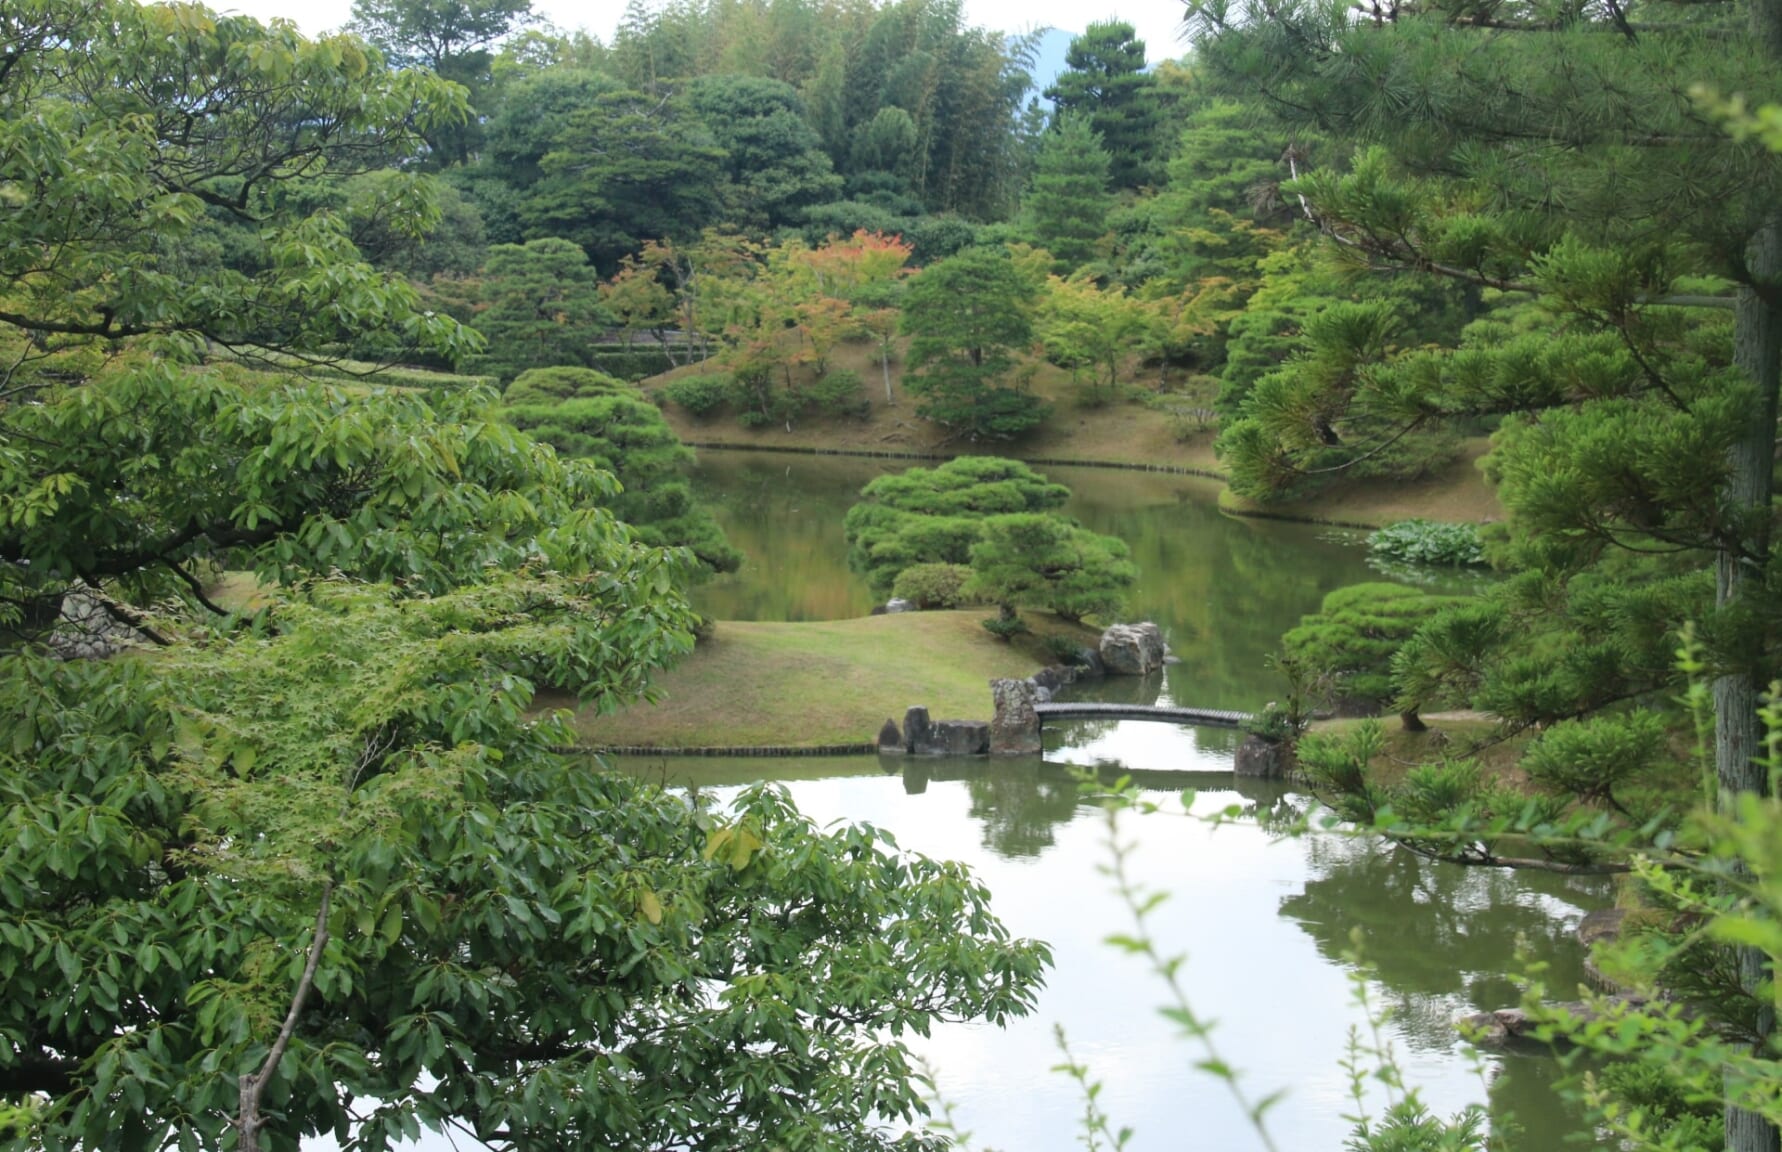 Katsura Imperial Villa in Kyoto